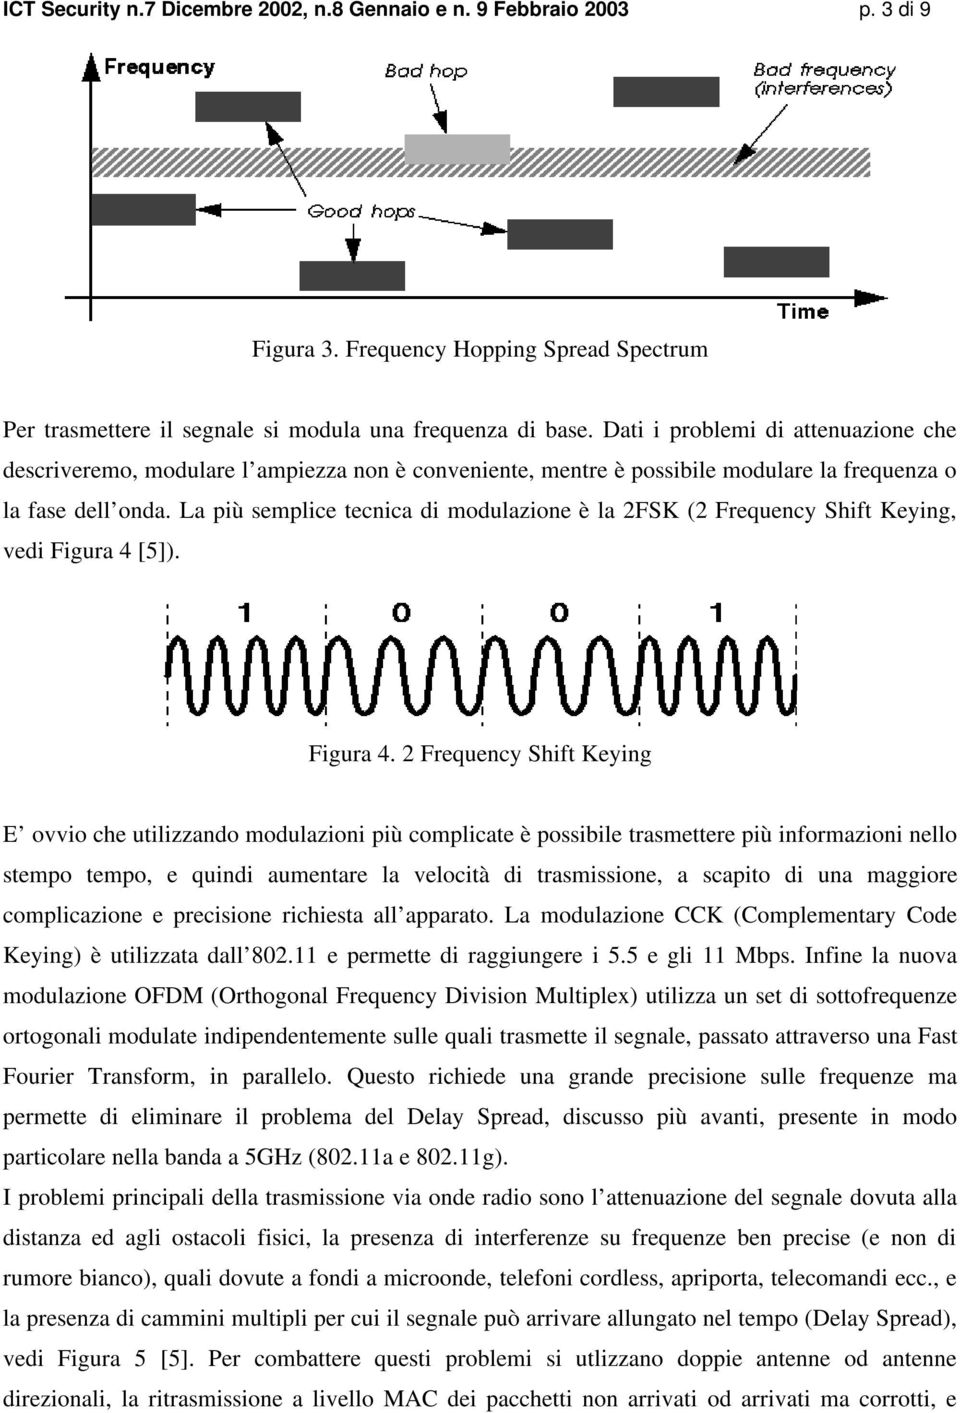 La più semplice tecnica di modulazione è la 2FSK (2 Frequency Shift Keying, vedi Figura 4 